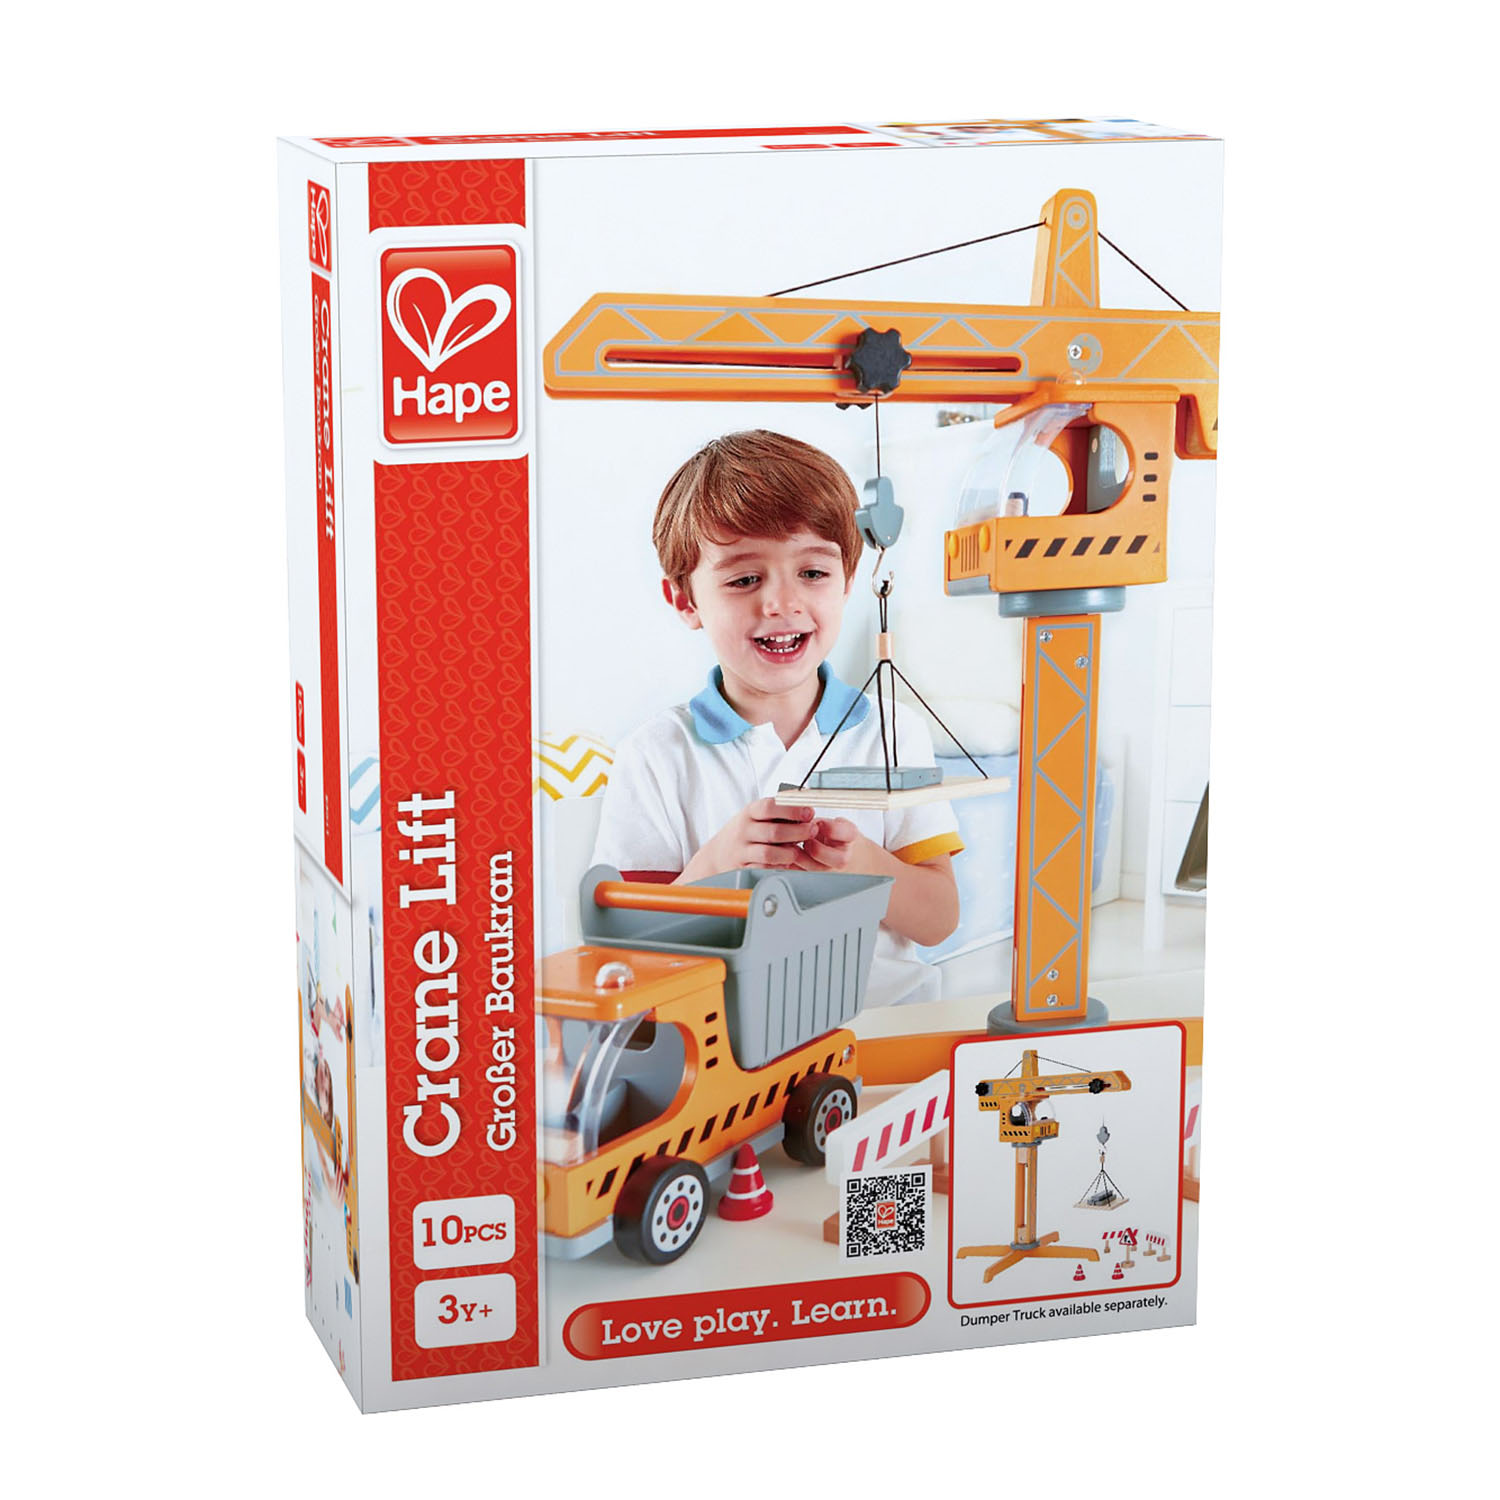 Hape Flexistix Truss Crane Contruction Toy 21204 for sale online 